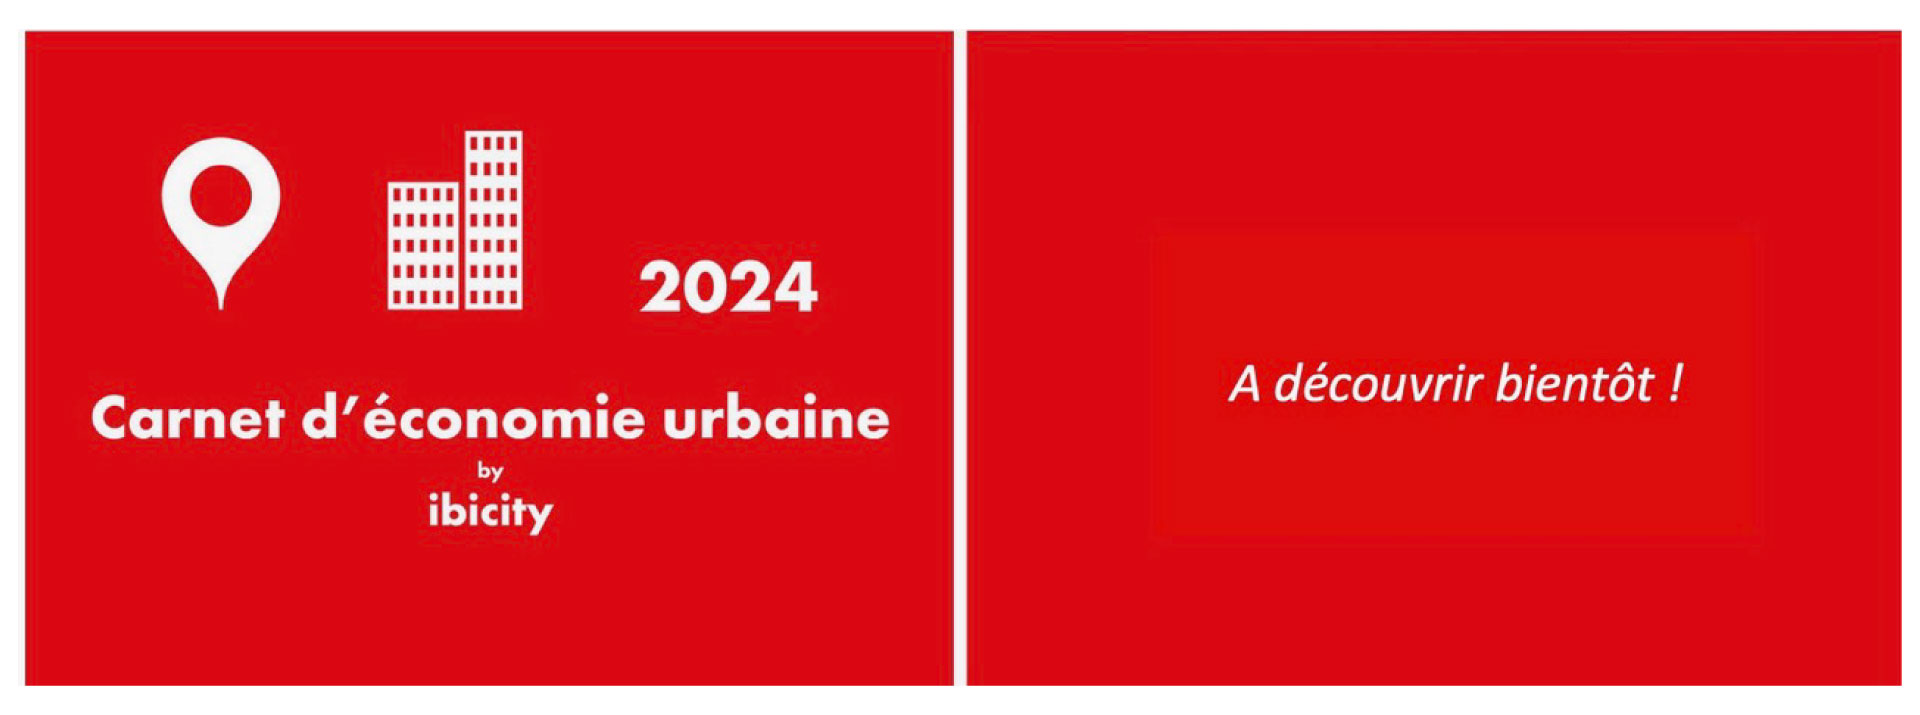 carnet d'économie urbaine 2024 pdf ibicity